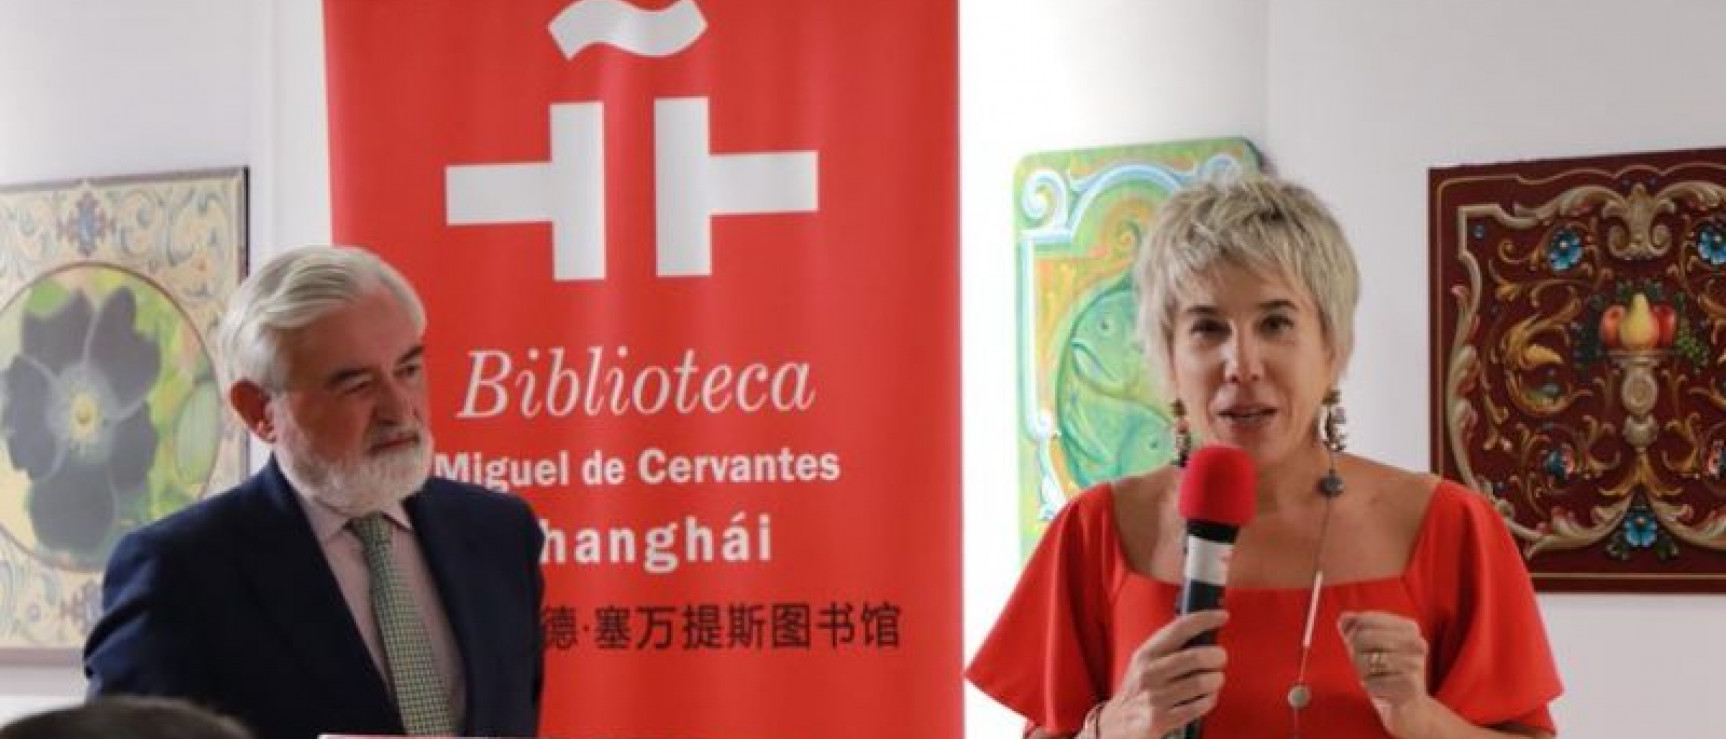 Inmaculada González Puy, directora del Instituto Cervantes de Pekín, presenta a Darío Villanueva.